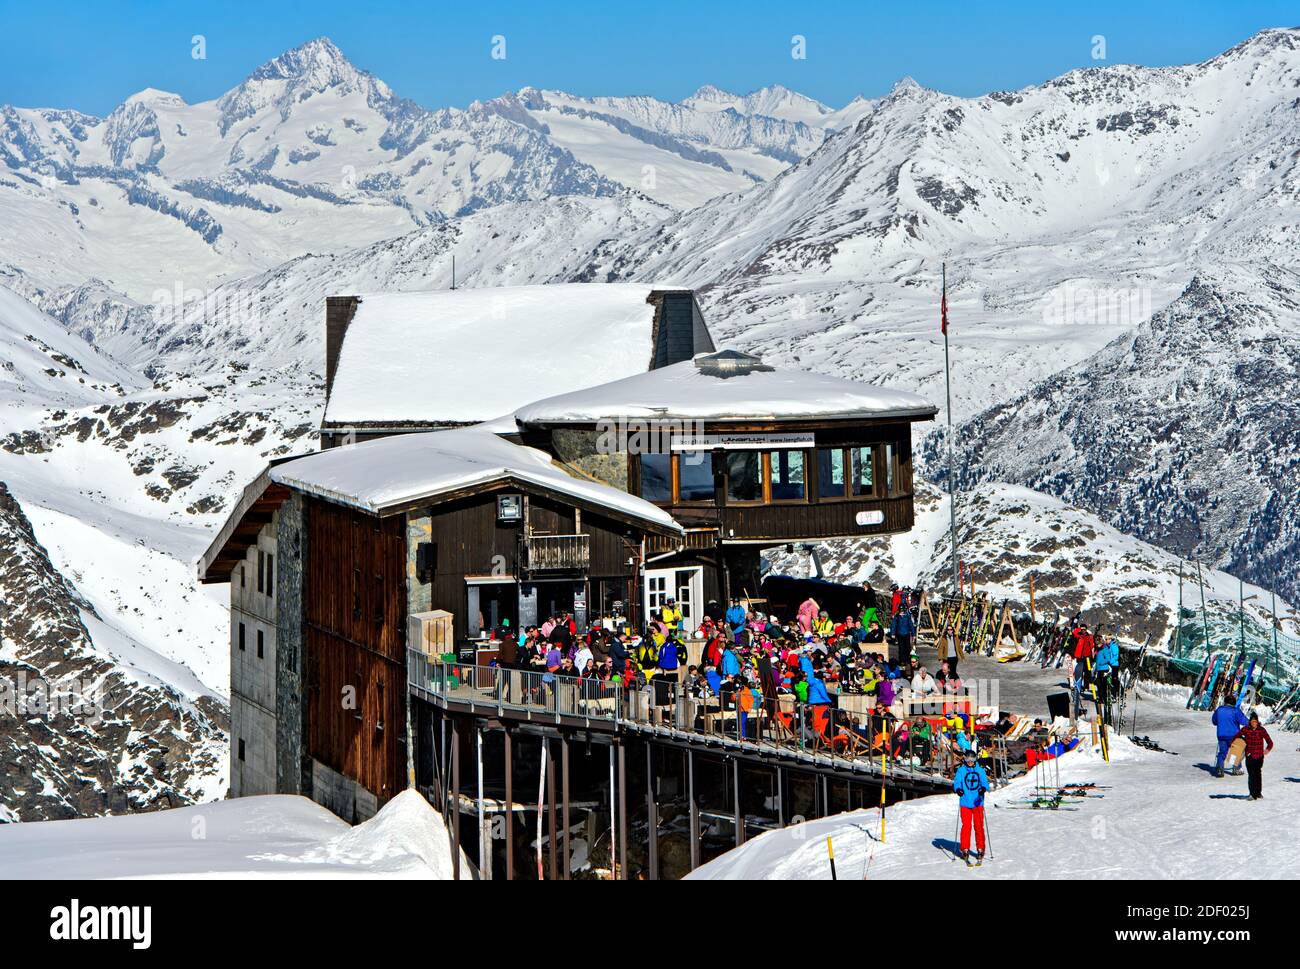 Les rassemblements de skieurs, comme dans le passé au restaurant de montagne Längfluh au-dessus de Saas-Fee, ne devraient pas être vus à Covid Times, Saas-Fee, Suisse Banque D'Images